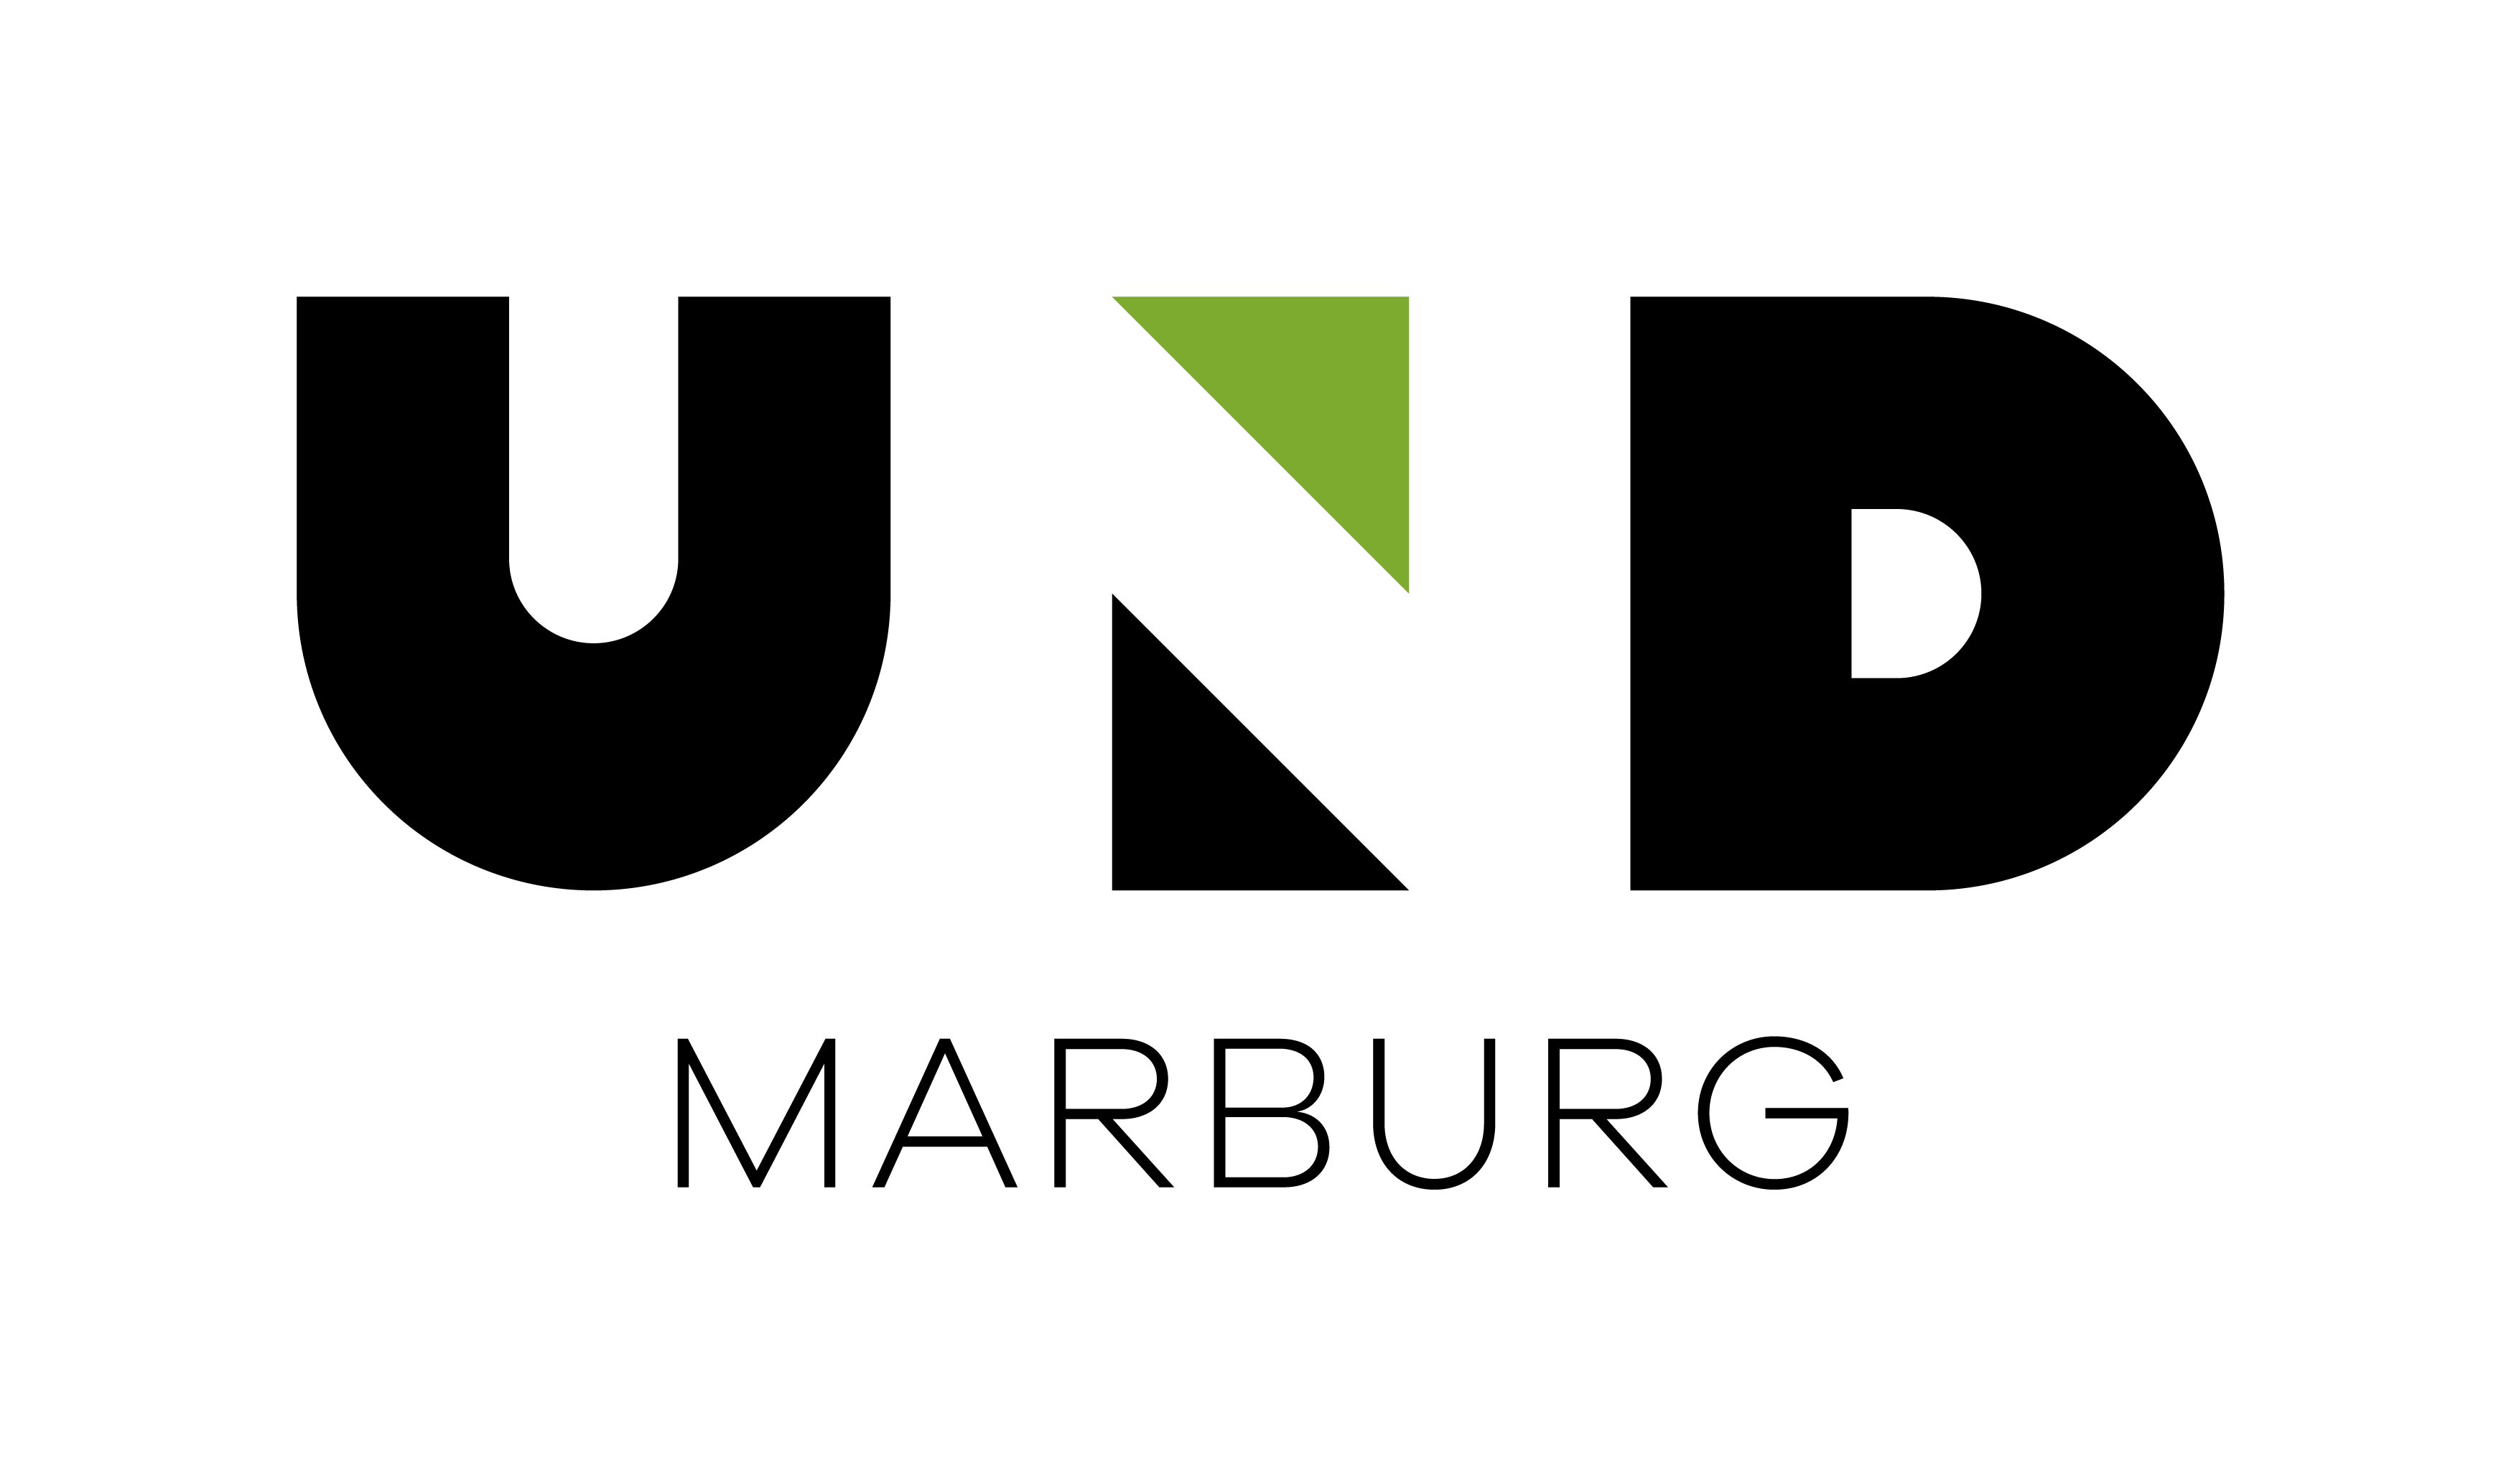 UND Marburg